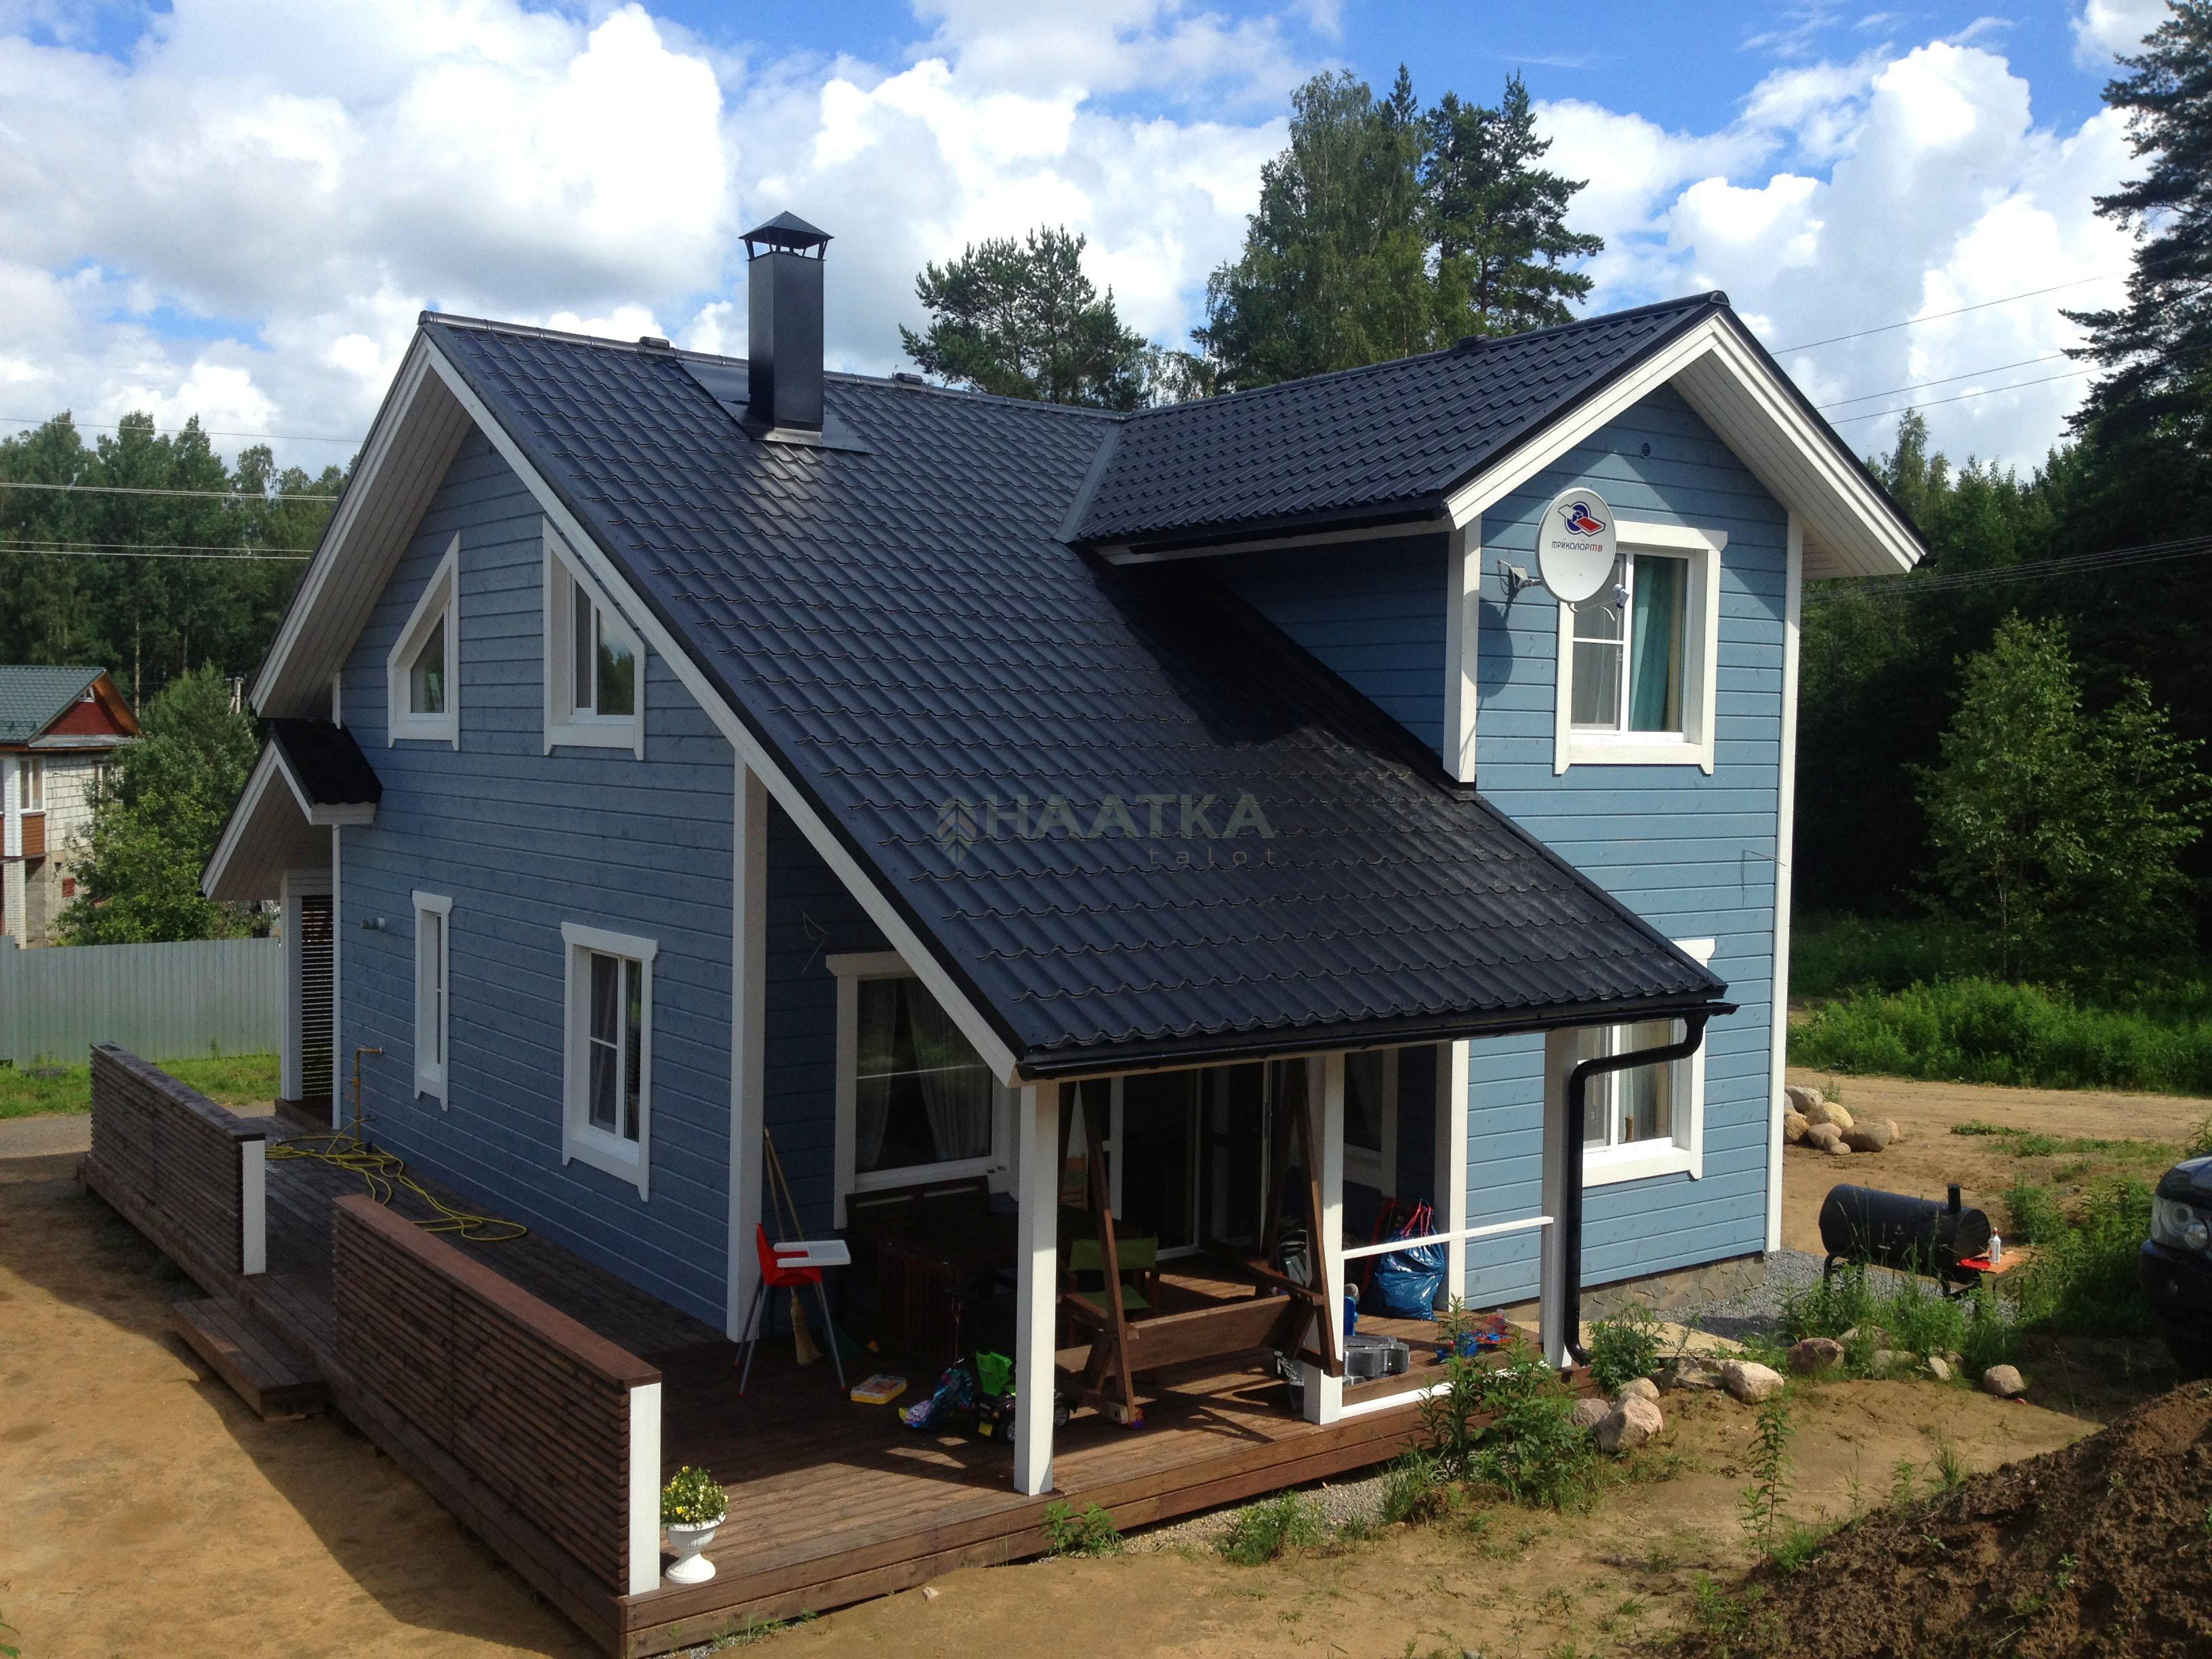 Контроль монтажа домокомплекта от строительной компании Haatka